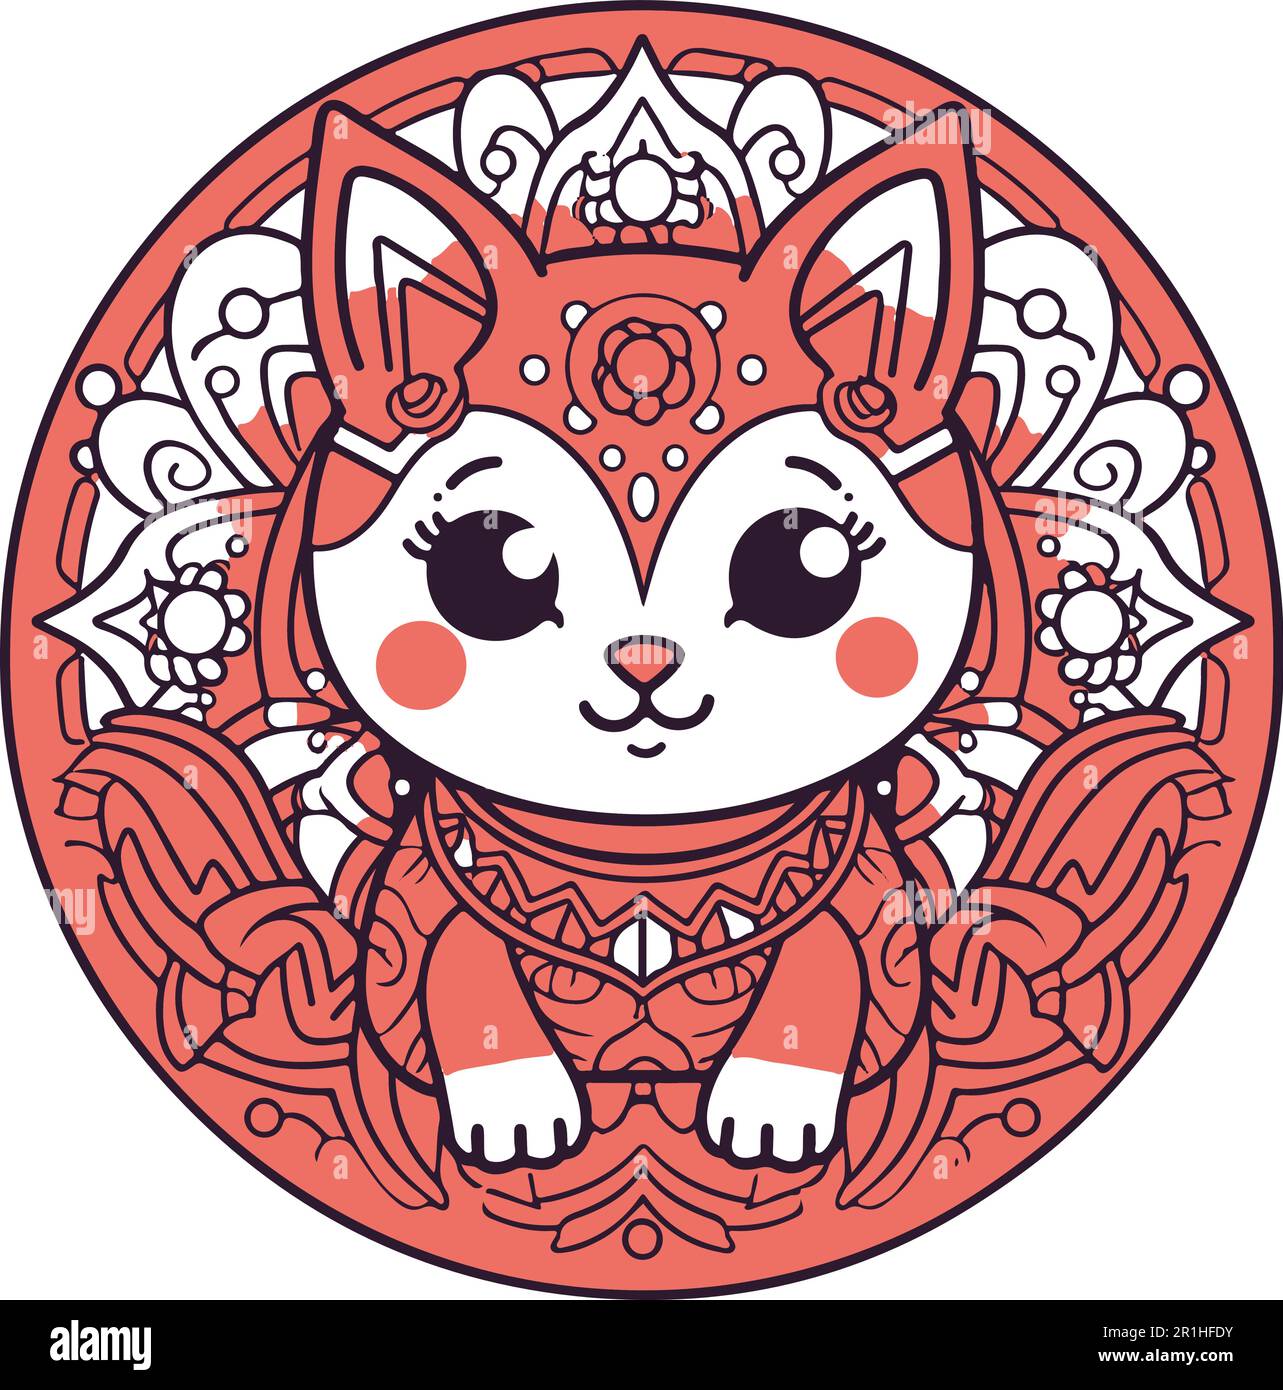 Kawaii cat flat Icon vector. Cute cat-flat illustration. Cute